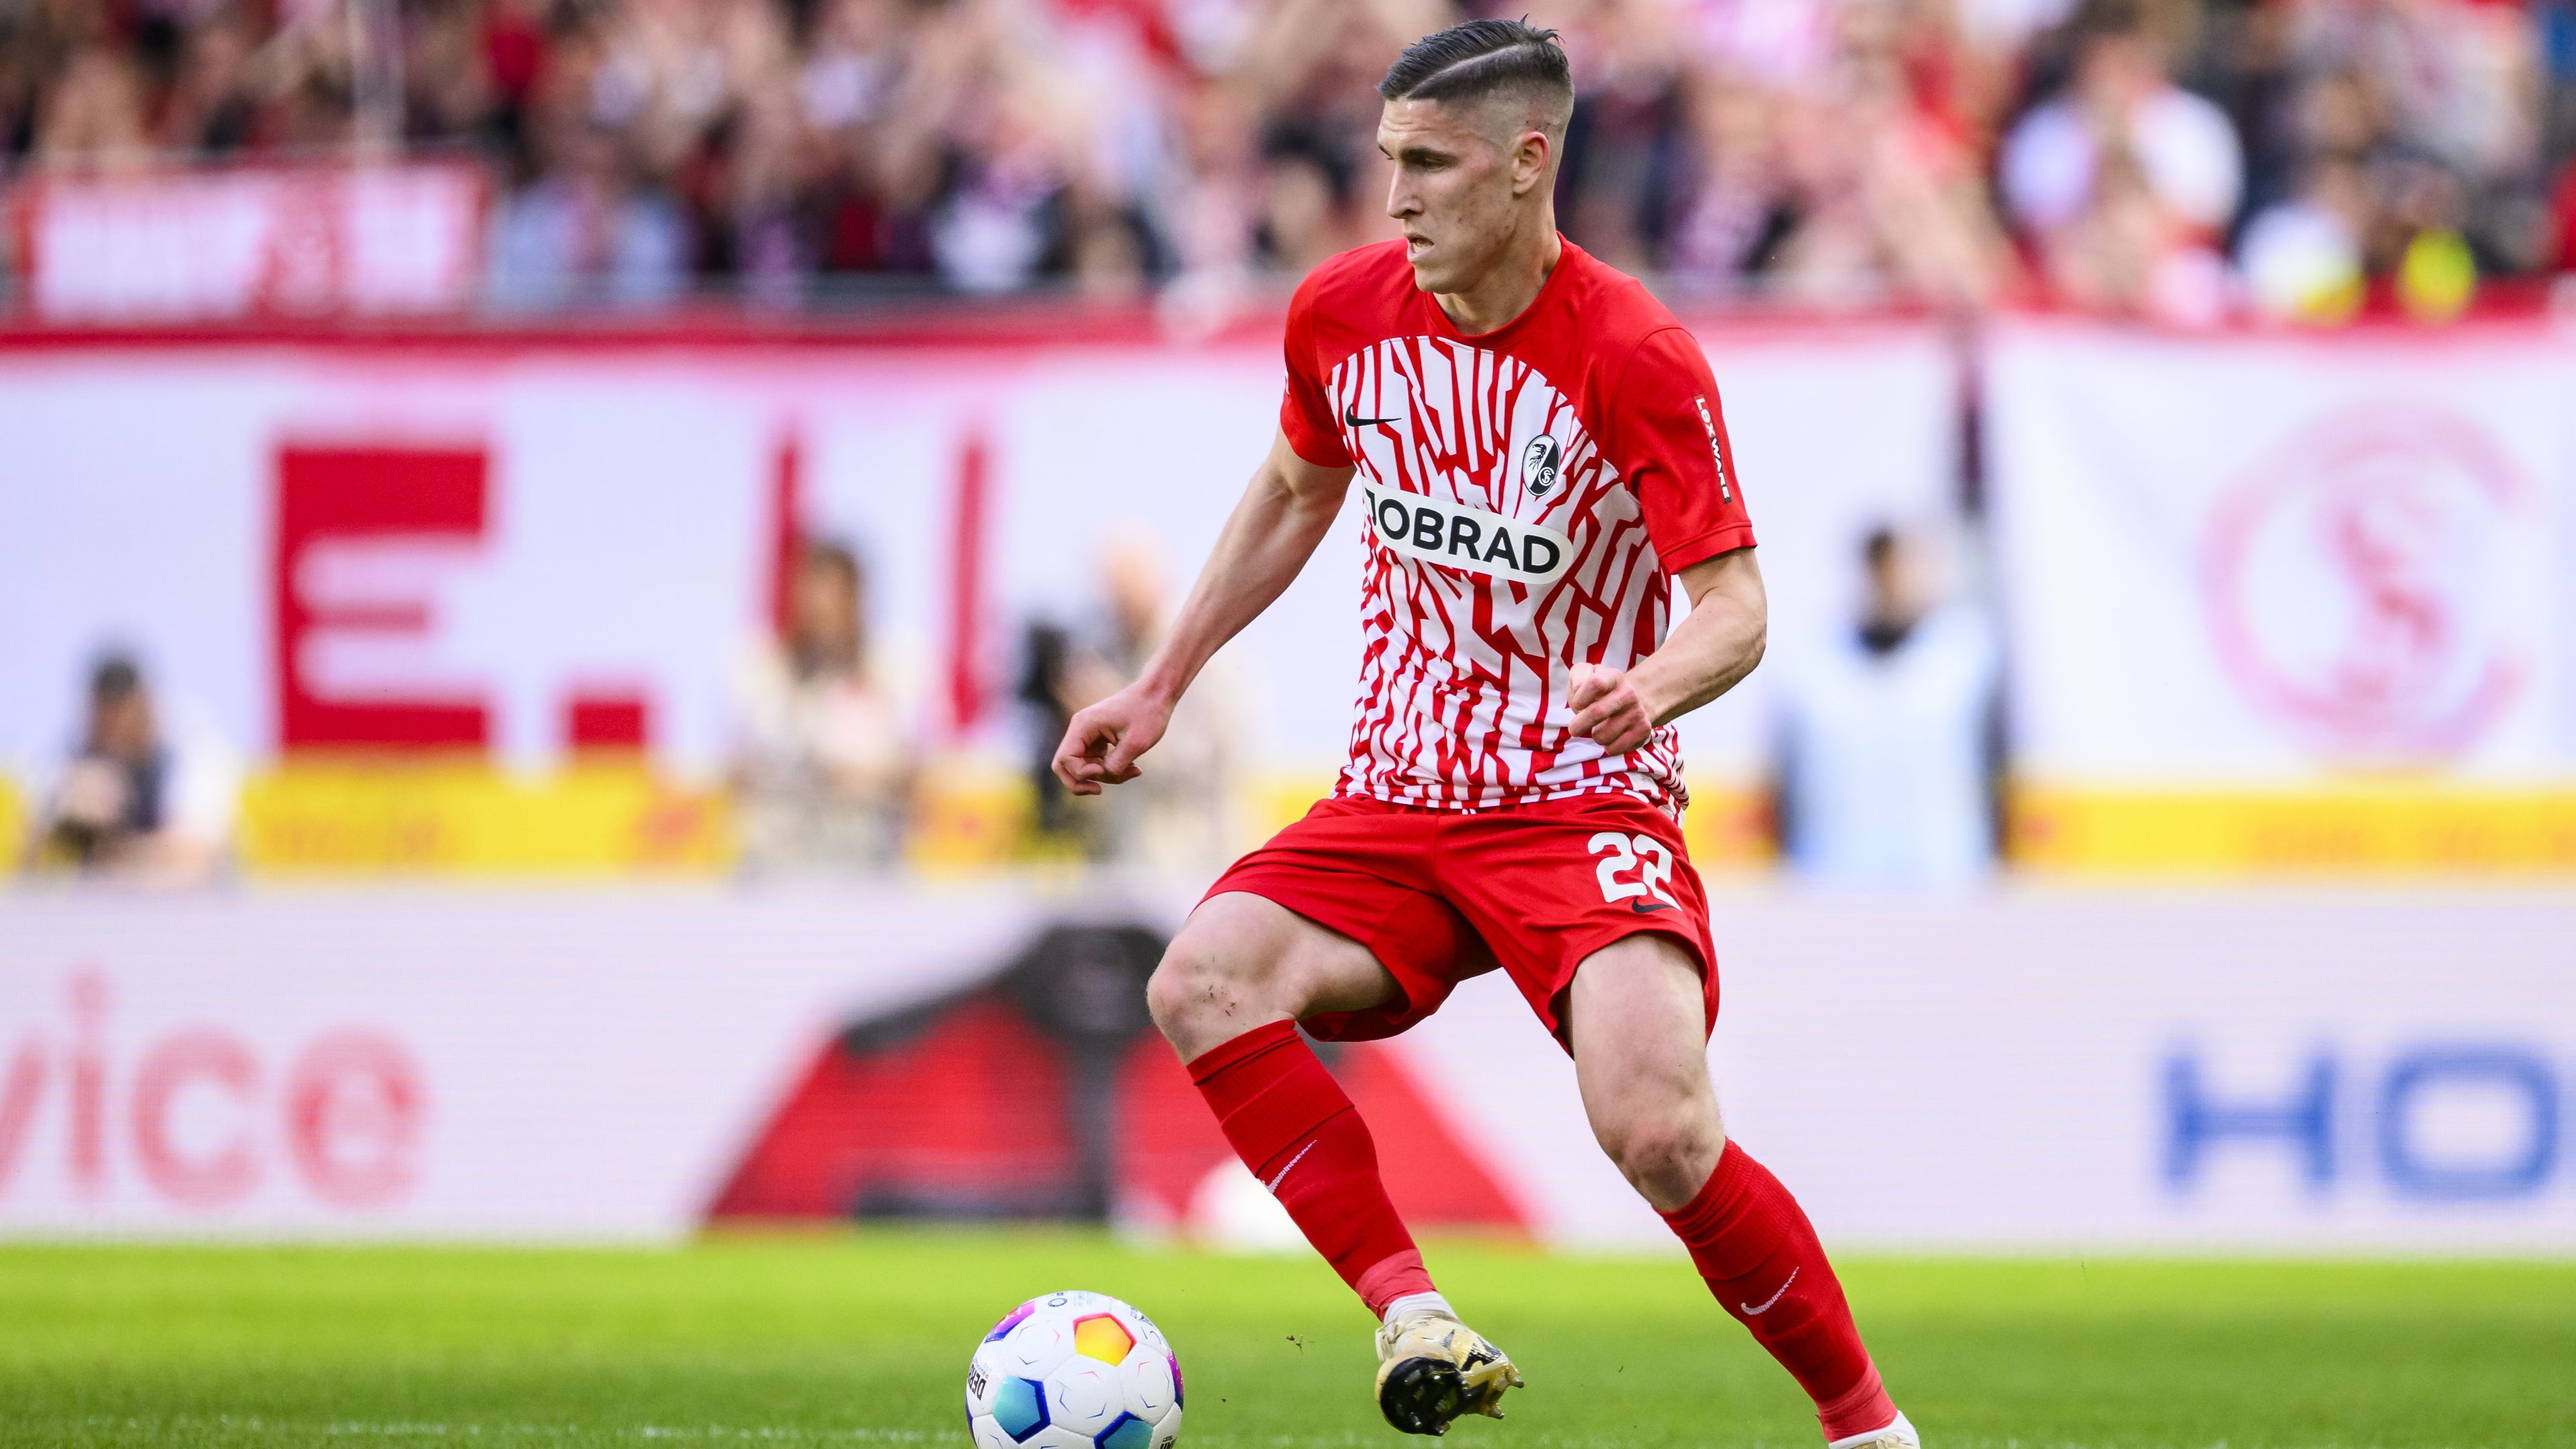 Sallai Roland és a Freiburg az utolsó fordulóban éppen a kiesés elől menekülő Union Berlin otthonában lép pályára – vajon ki örülhet majd a magyaros Bundesliga-meccs után?